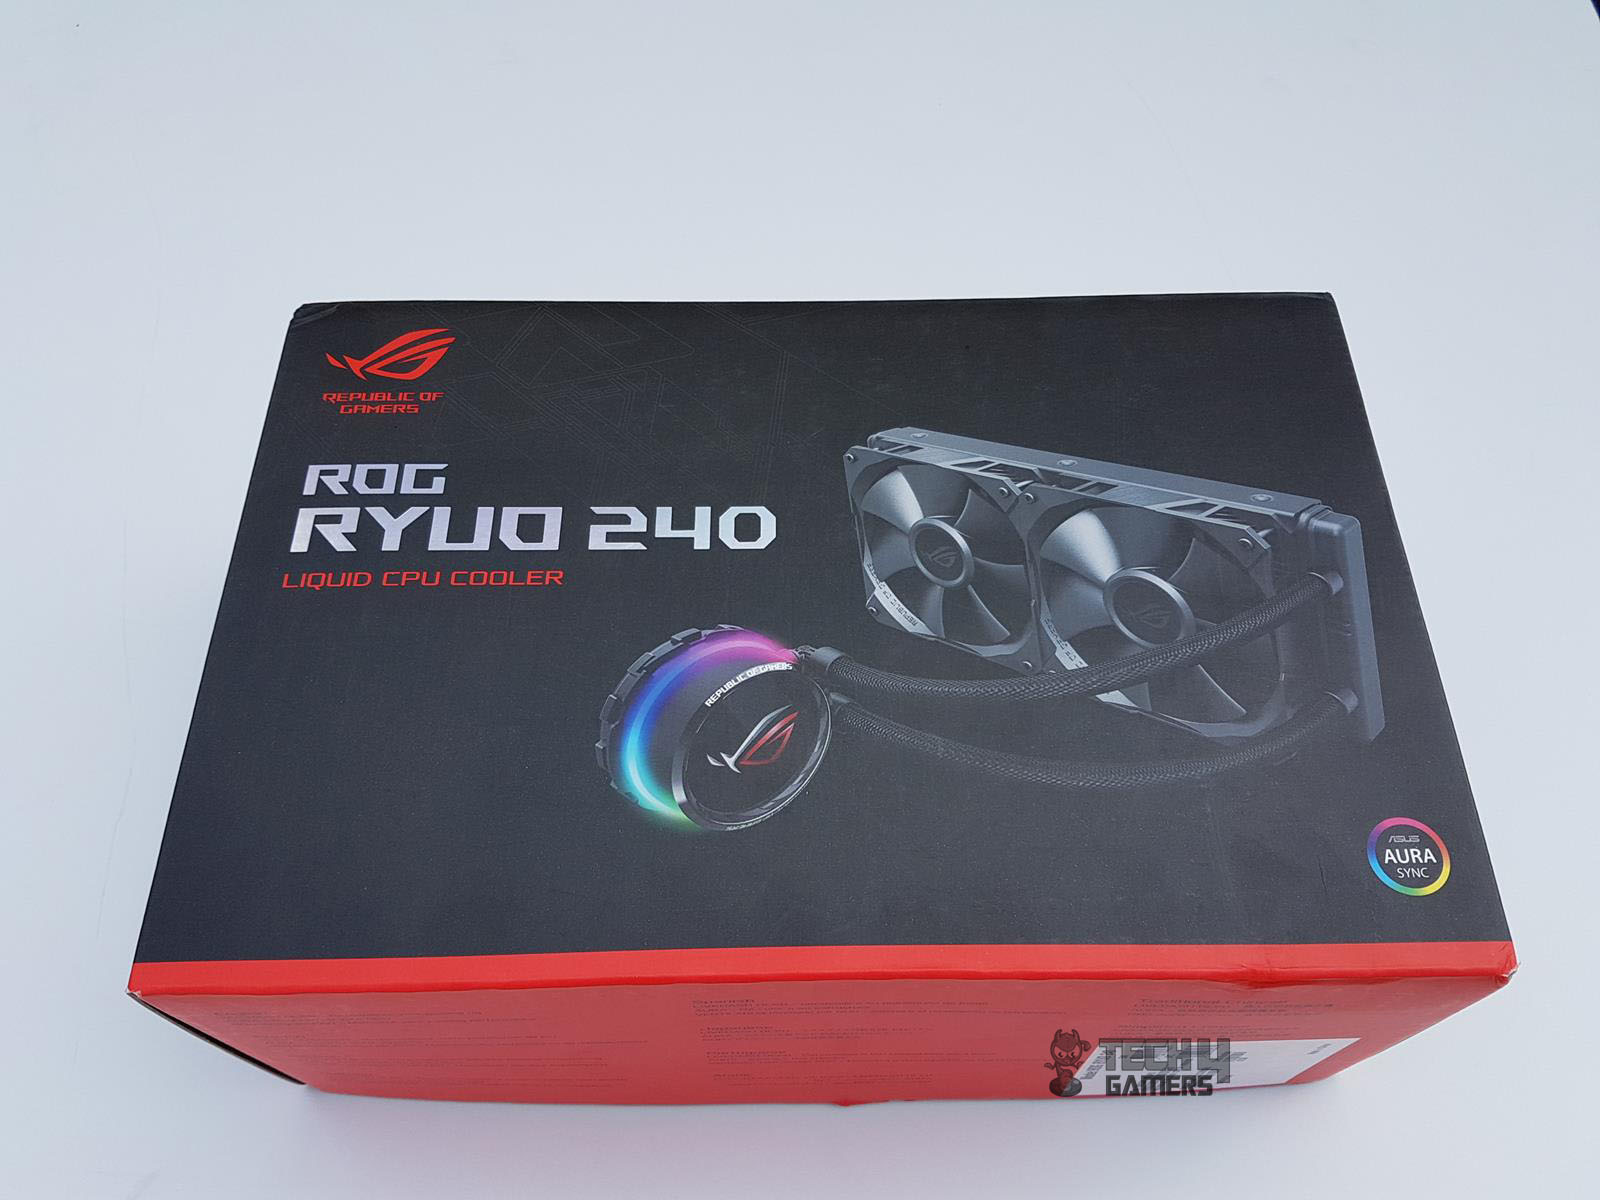 kam ressource respektfuld ASUS ROG Ryuo 240 CPU Liquid Cooler Review - Tech4Gamers